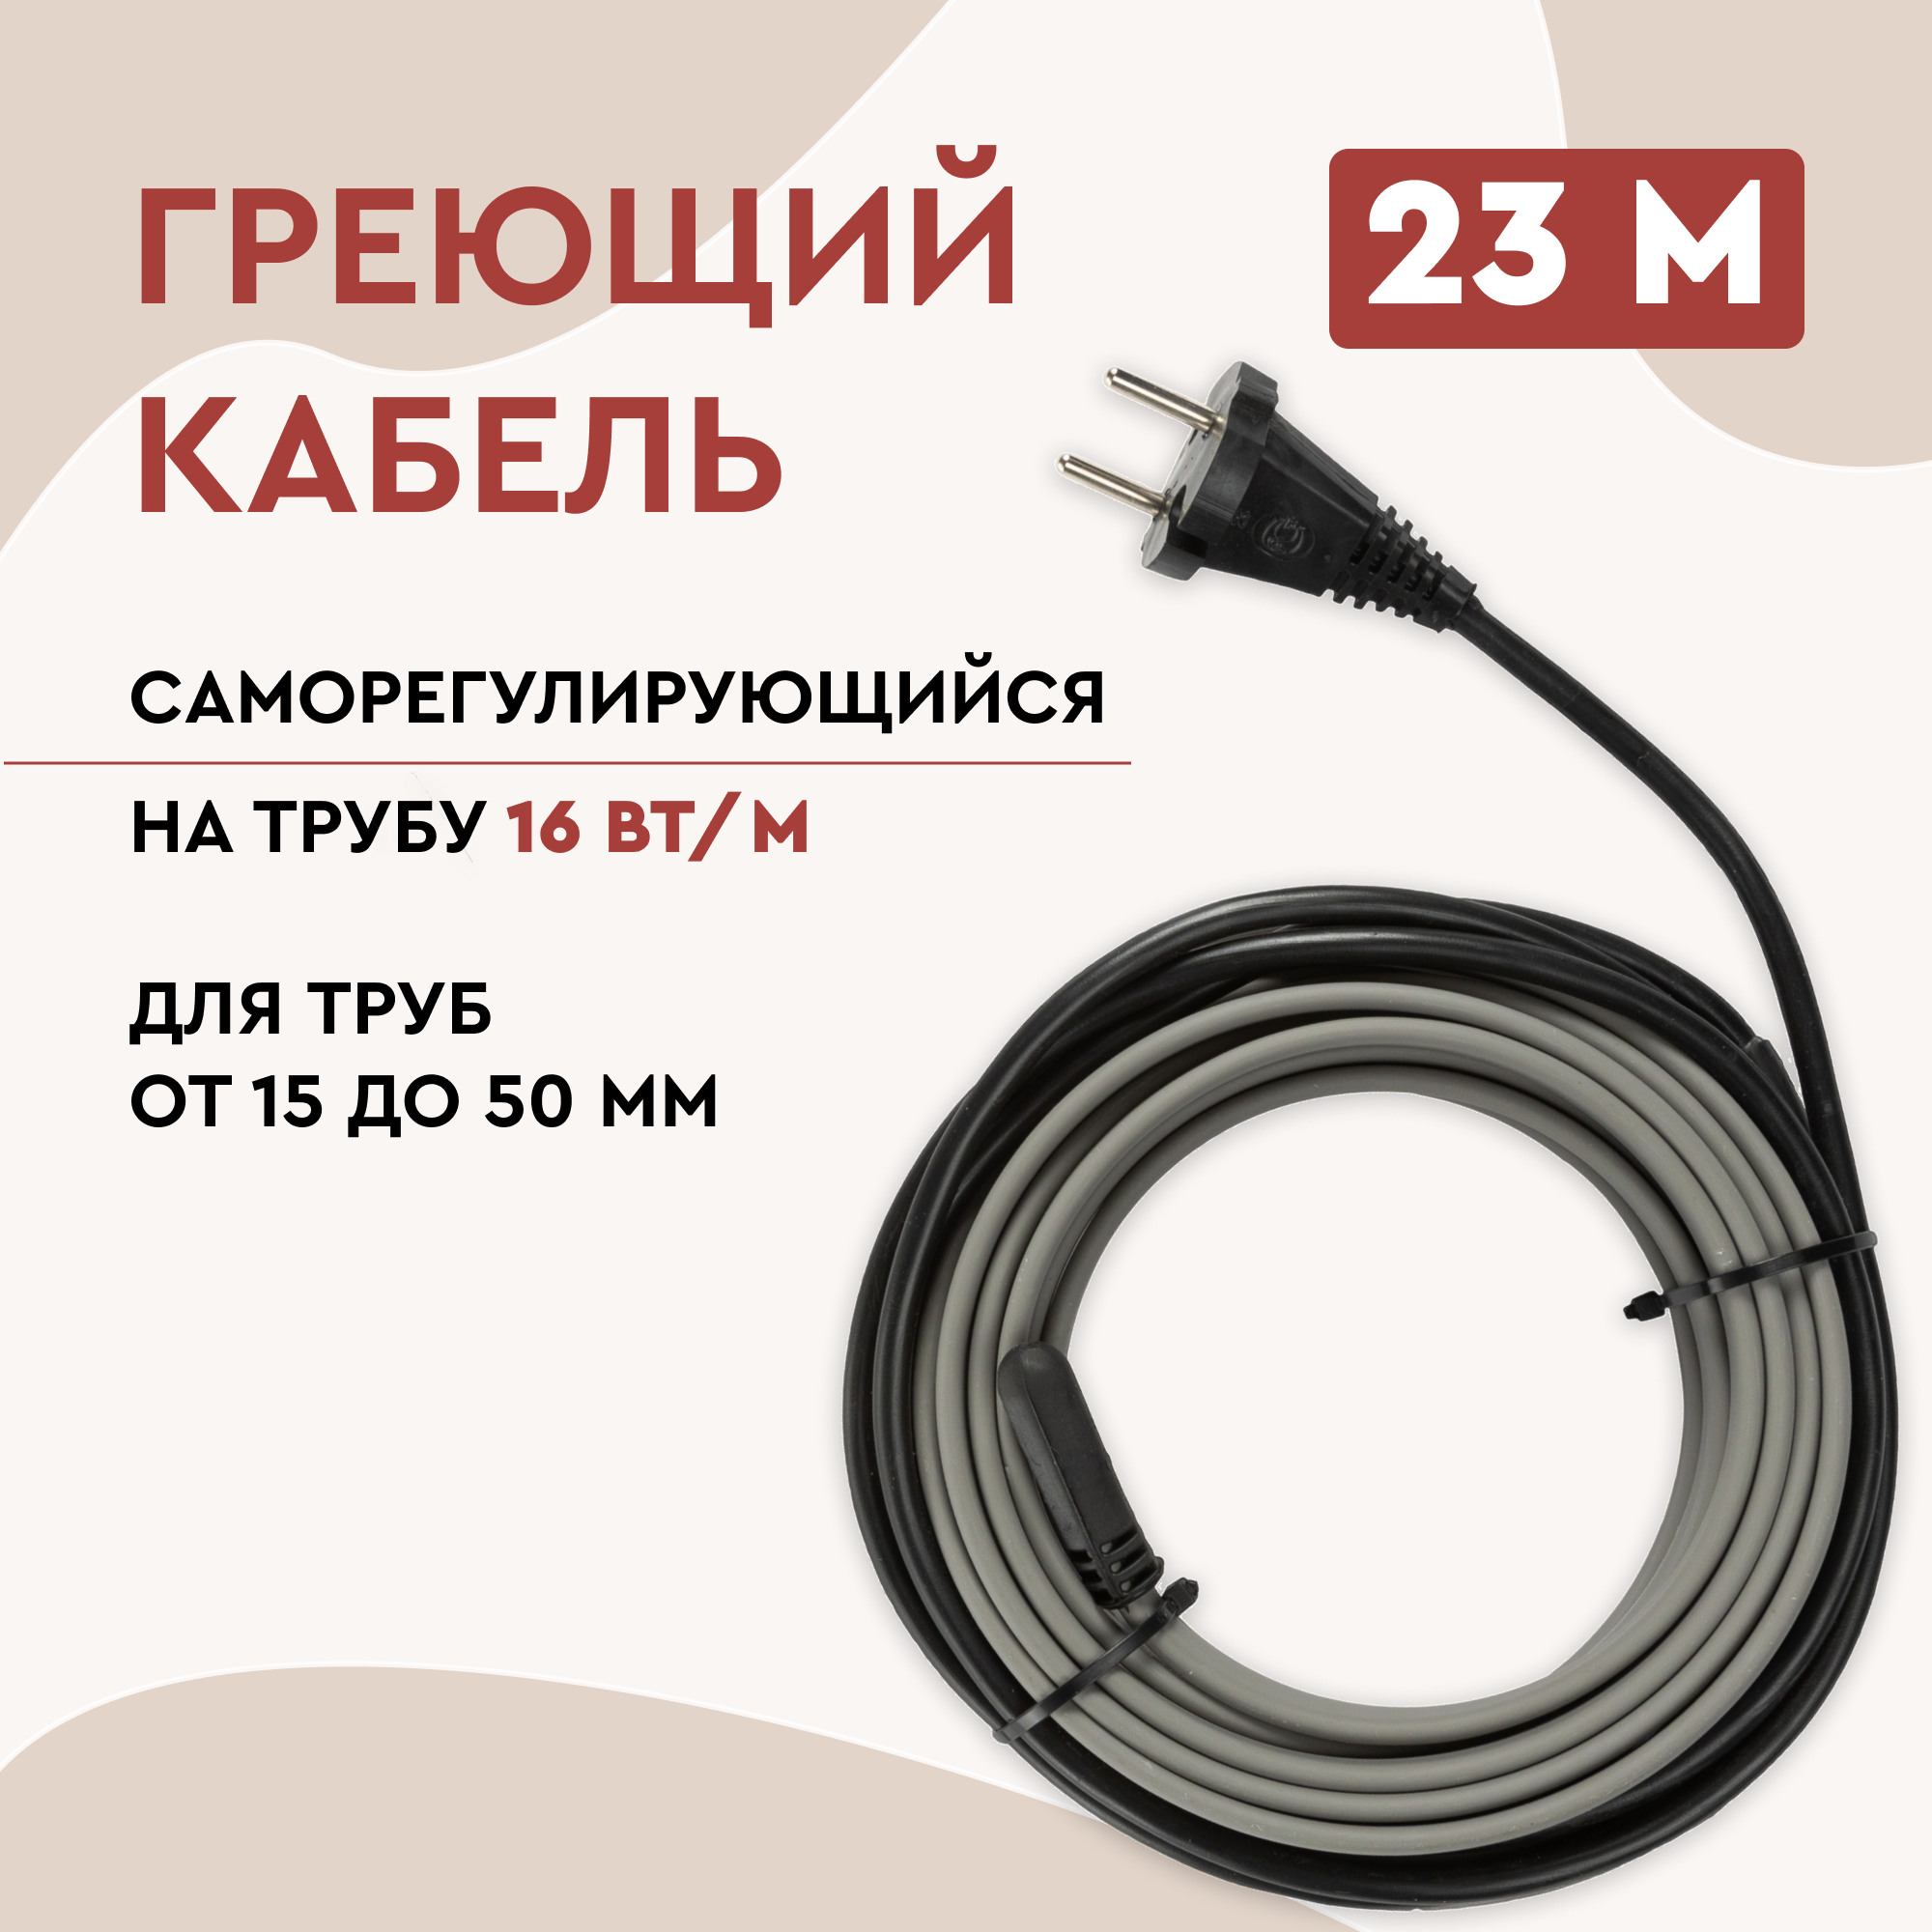 Греющий кабель Lite на трубу 23м 368Вт